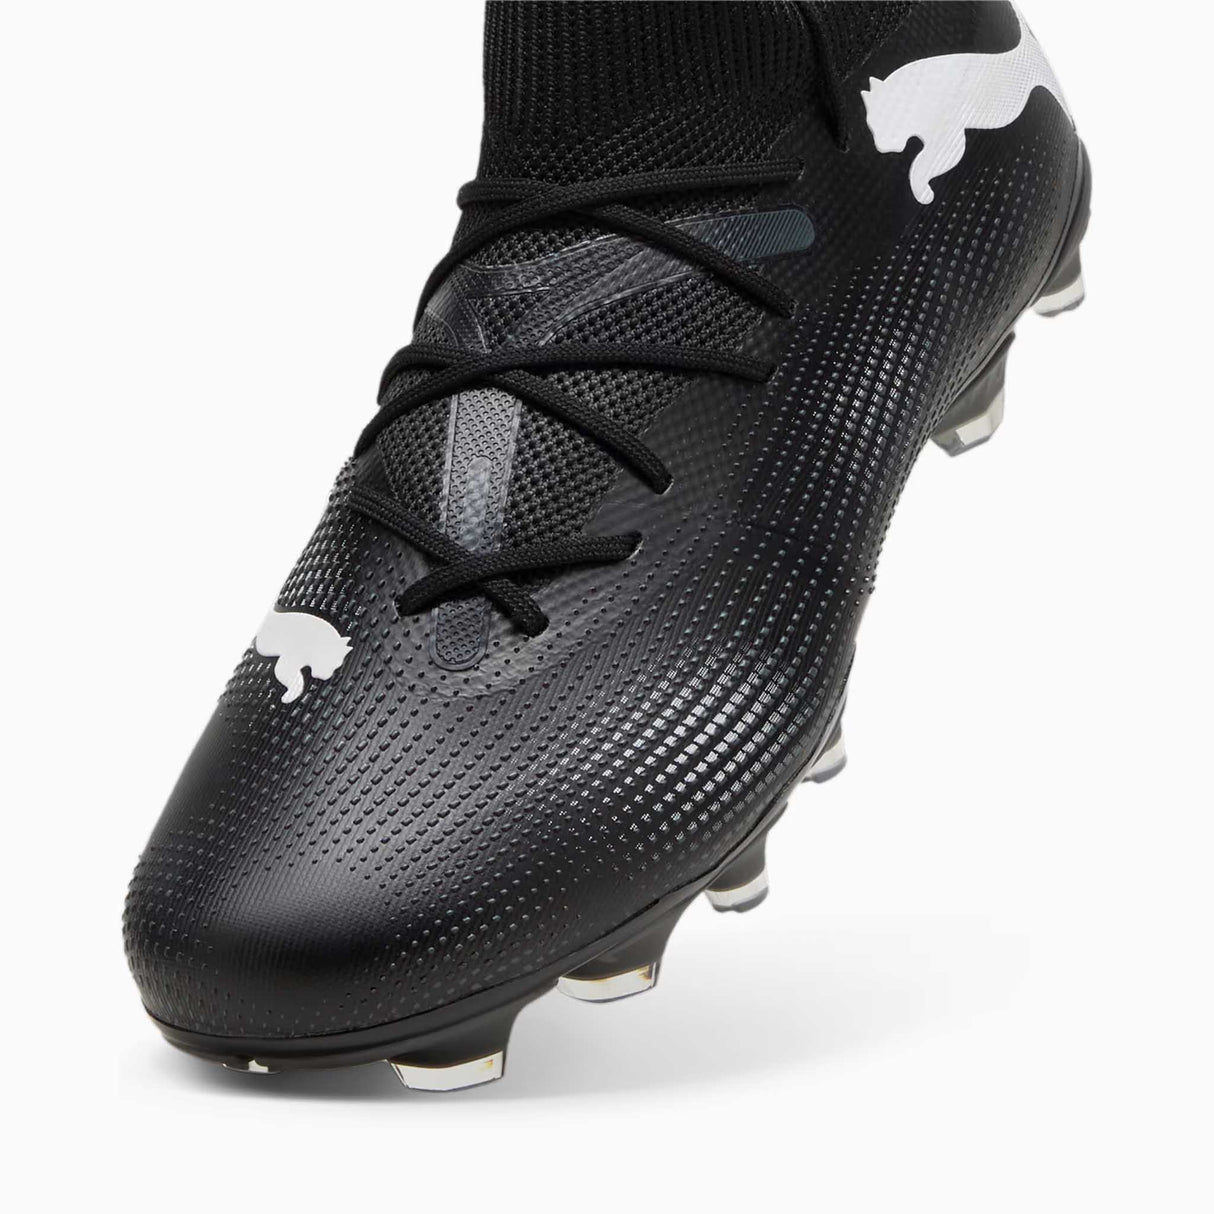 Puma Future 7 Match FG/AG chaussures de soccer a crampons pointe- puma black / puma white